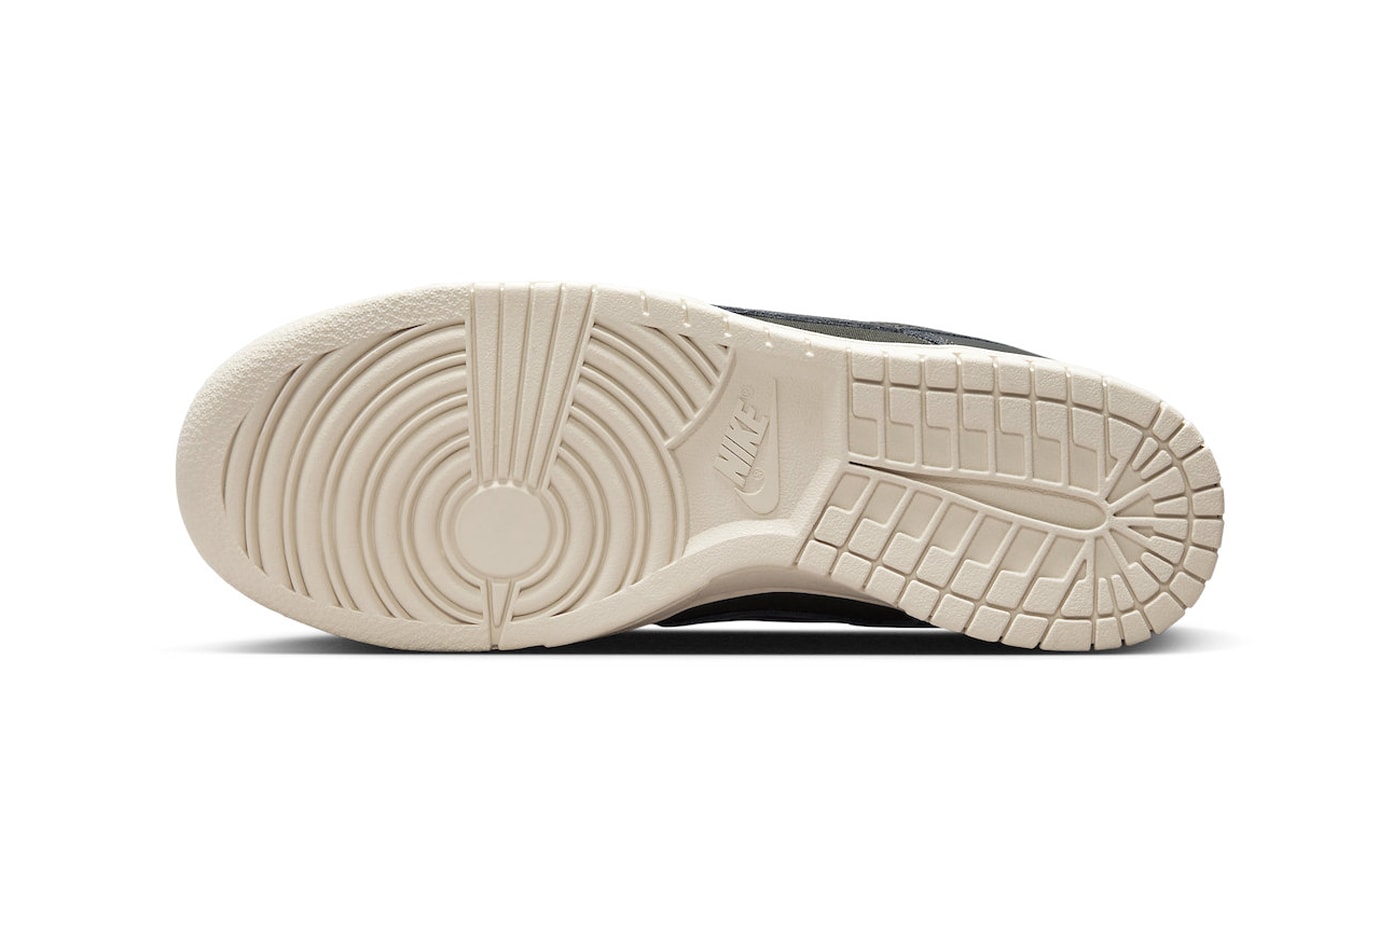 Официальный взгляд на кроссовки Nike Dunk Low Premium "Sequoia" DZ2538-300 Sequoia/Sequoia-Light Orewood Brown, кроссовки для скейтбординга с галочкой 